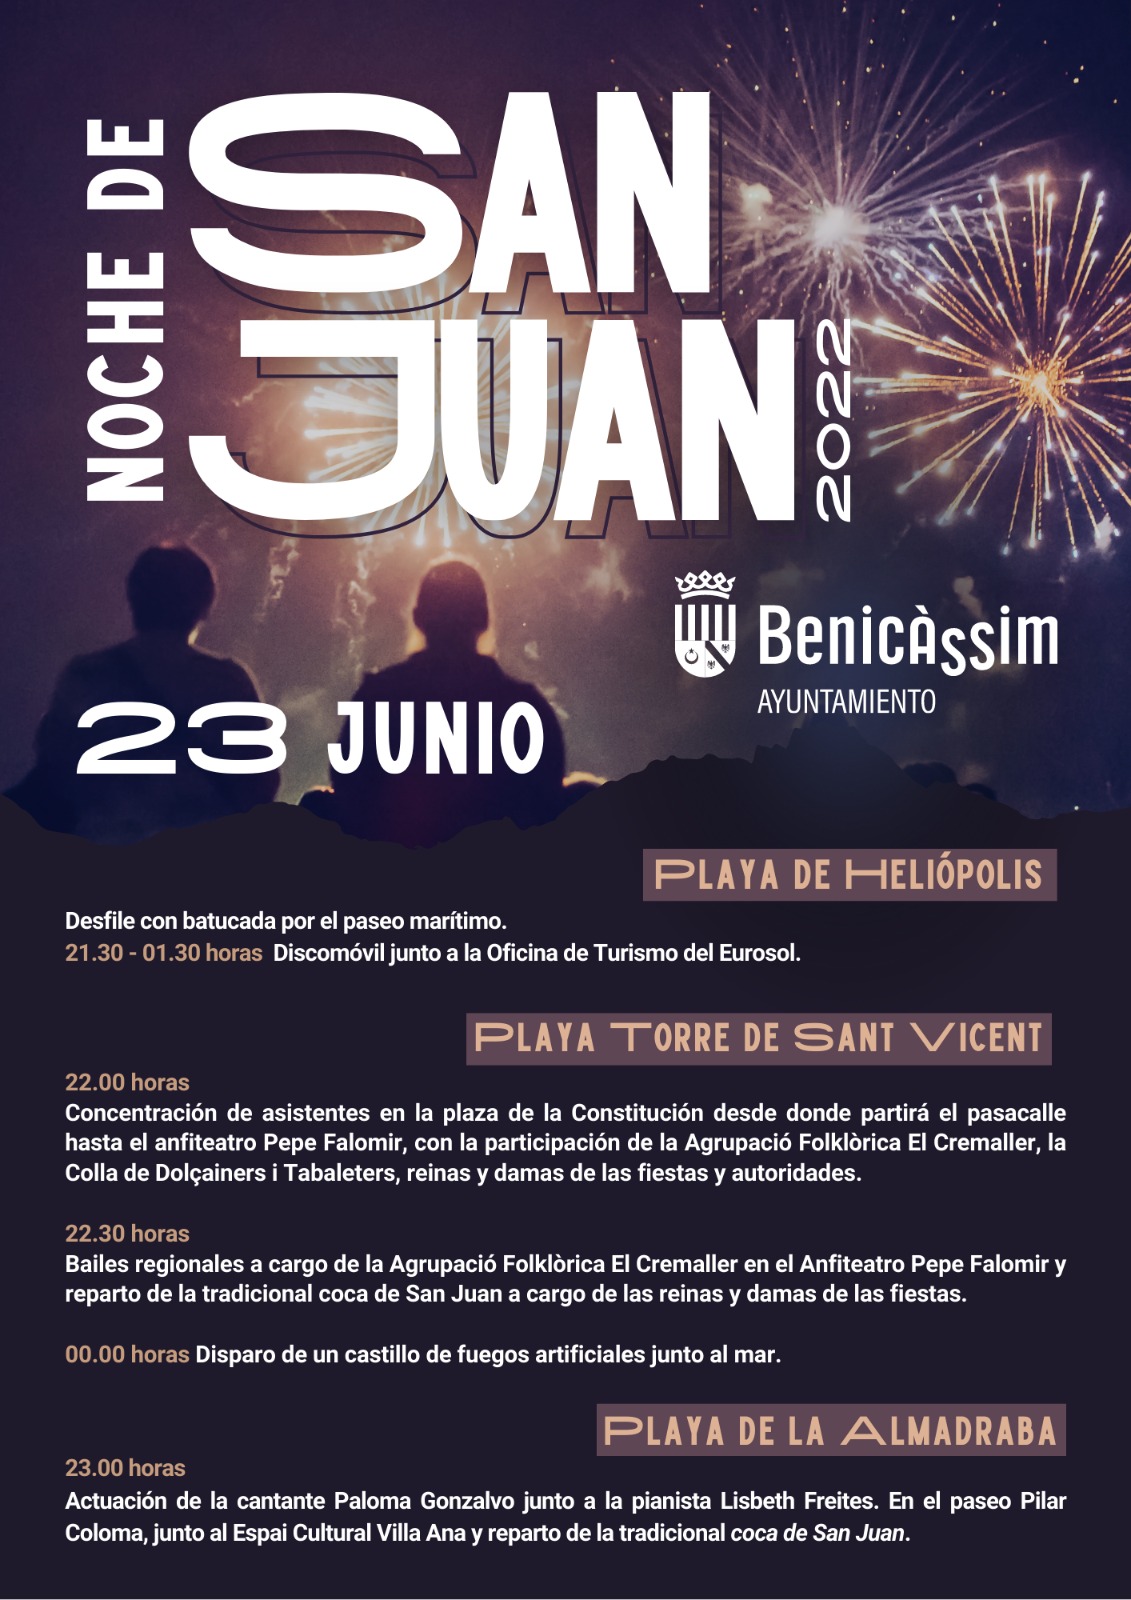 Benicàssim programa música, bailes y fuegos artificiales para la Noche de San Juan